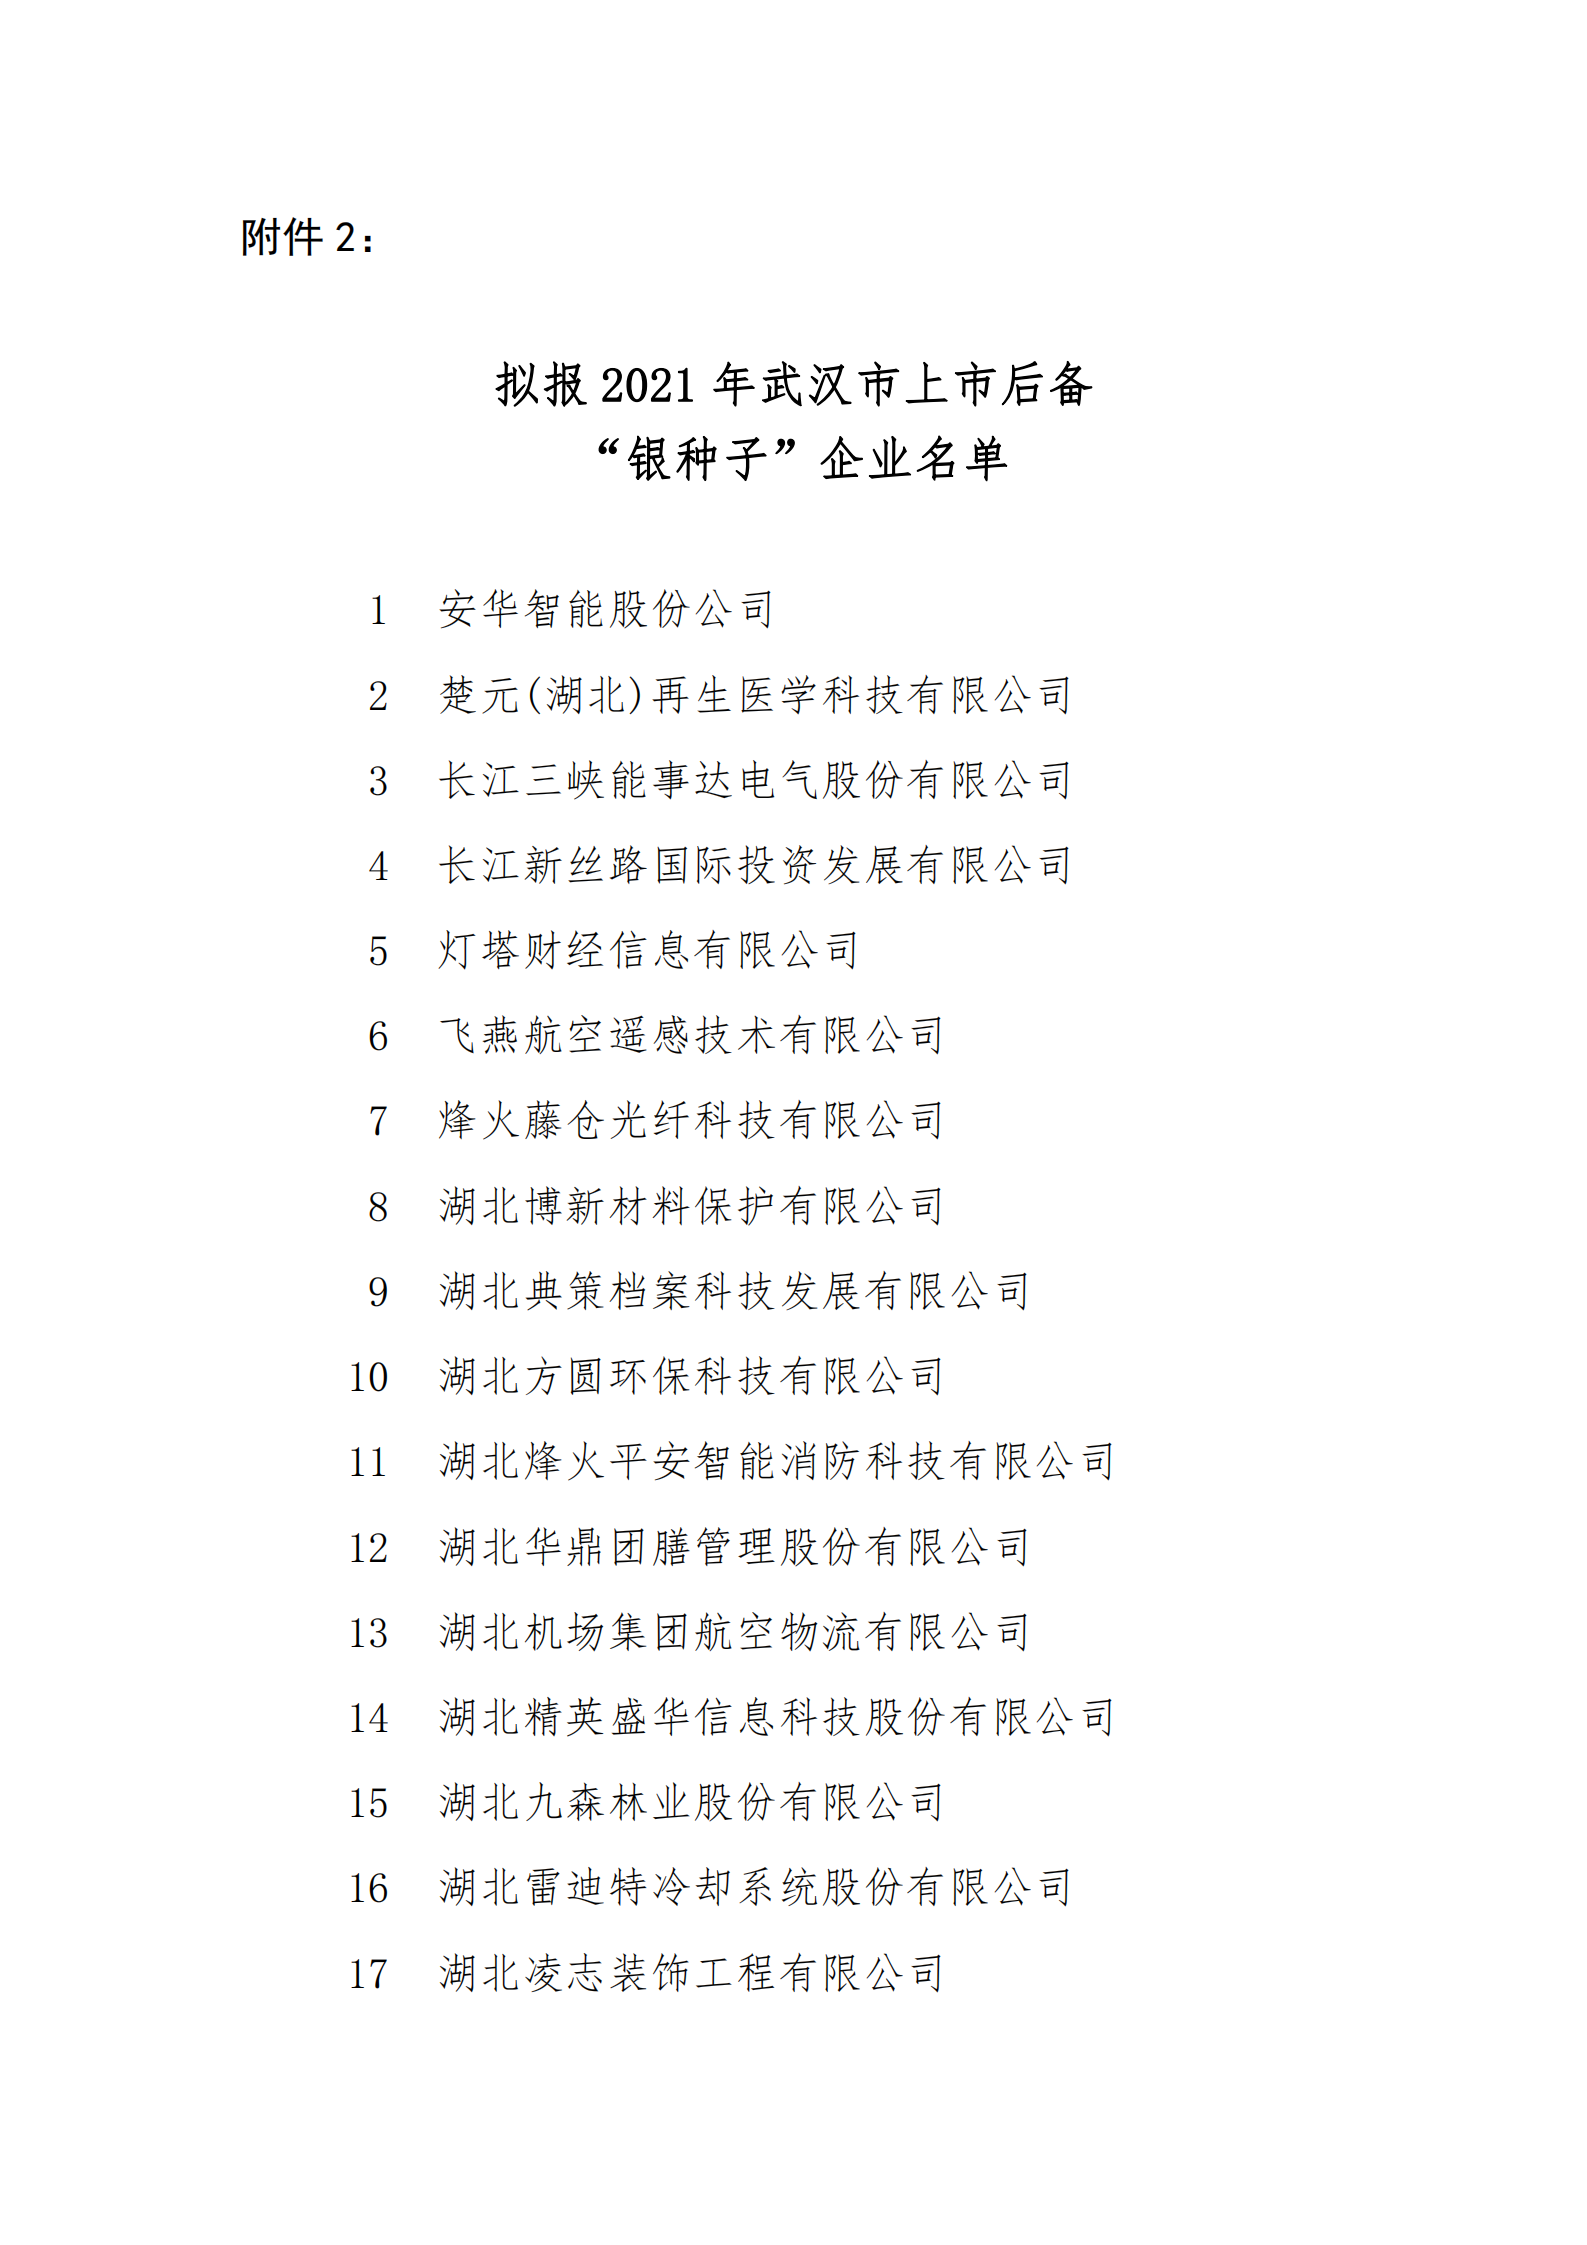 附件2：拟报2021年武汉市上市后备 “银种子”企业名单_00.png